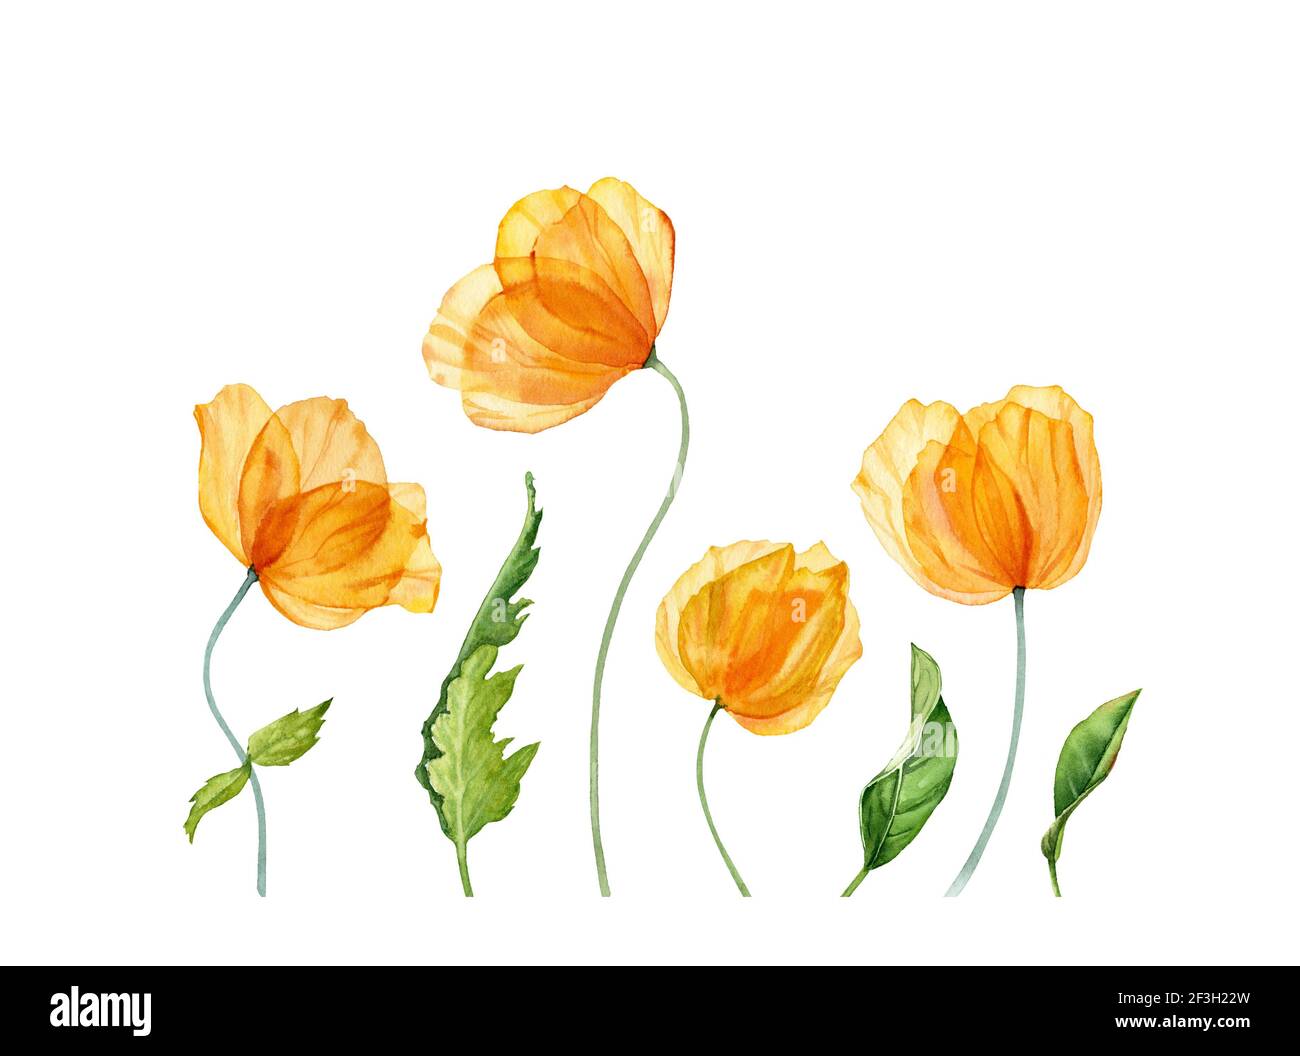 Fleurs d'aquarelle. Fleurs jaunes de printemps avec des feuilles vertes. Bannière fleurie dessinée à la main. Illustration botanique réaliste pour les cartes de Pâques Banque D'Images